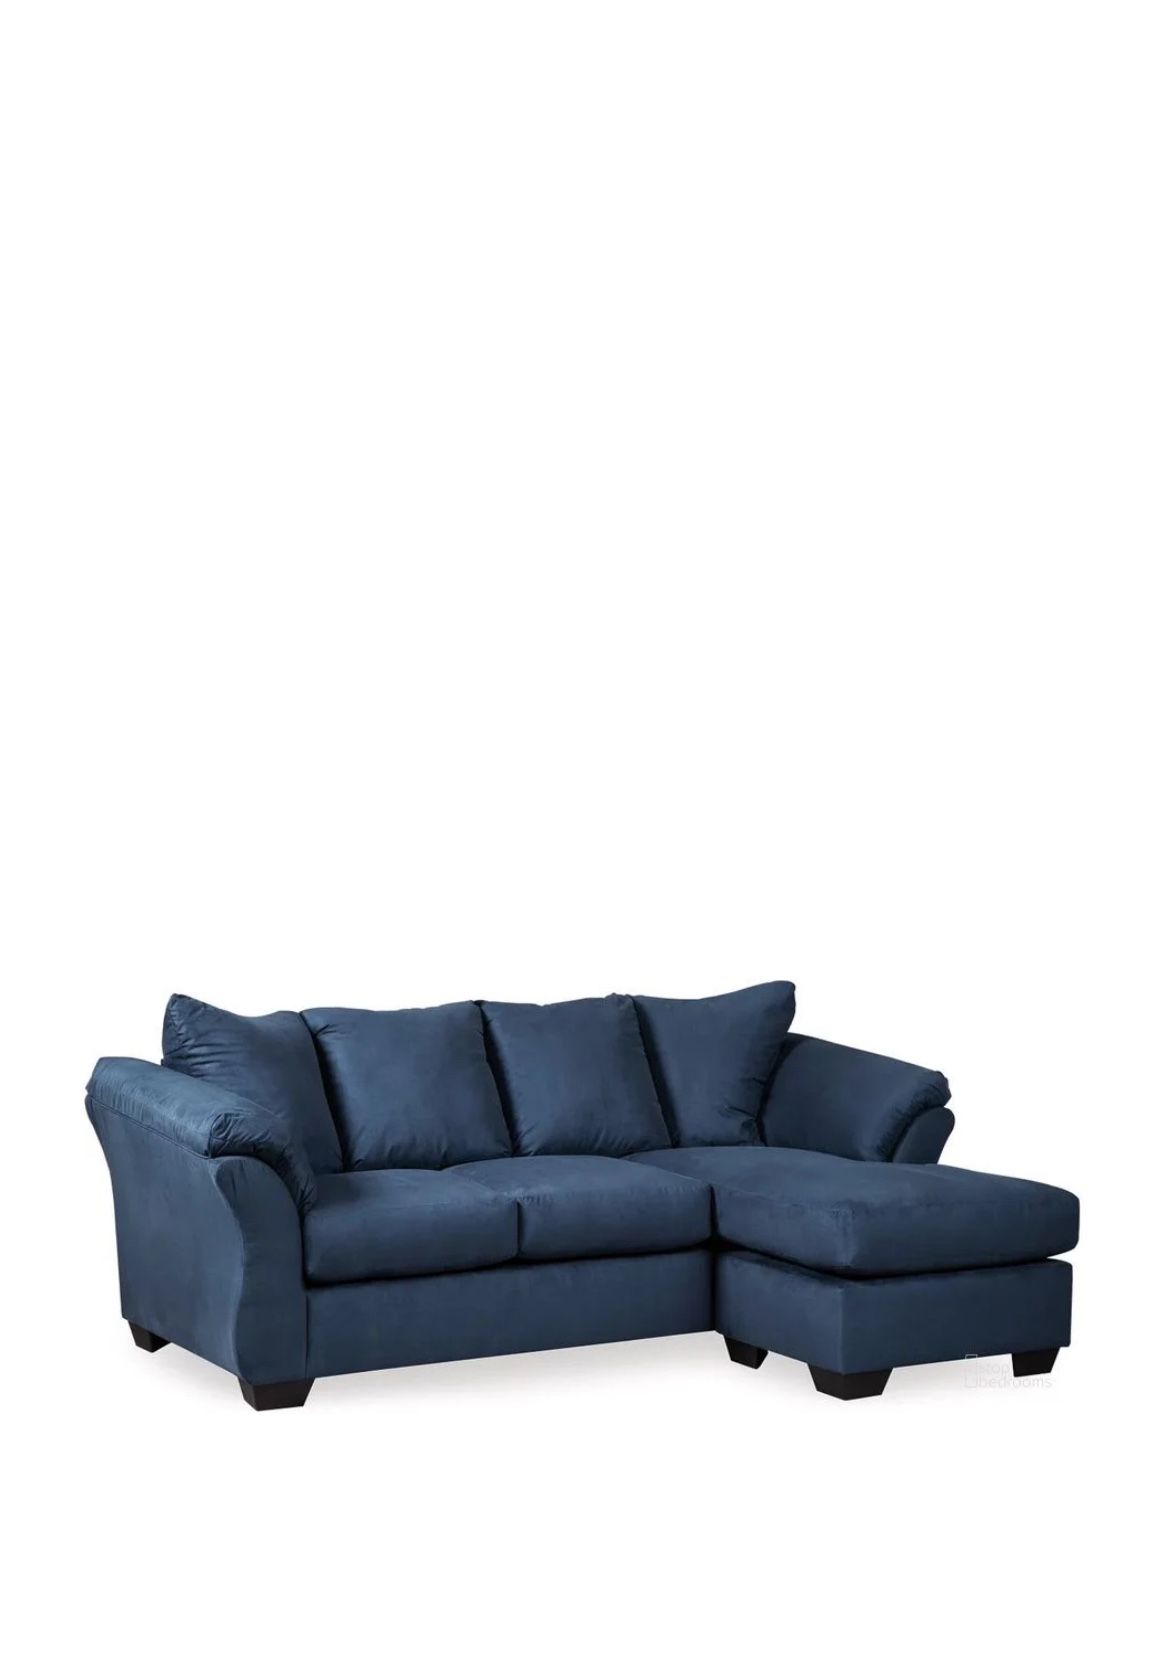 Complete Navy Blue Living Room Set